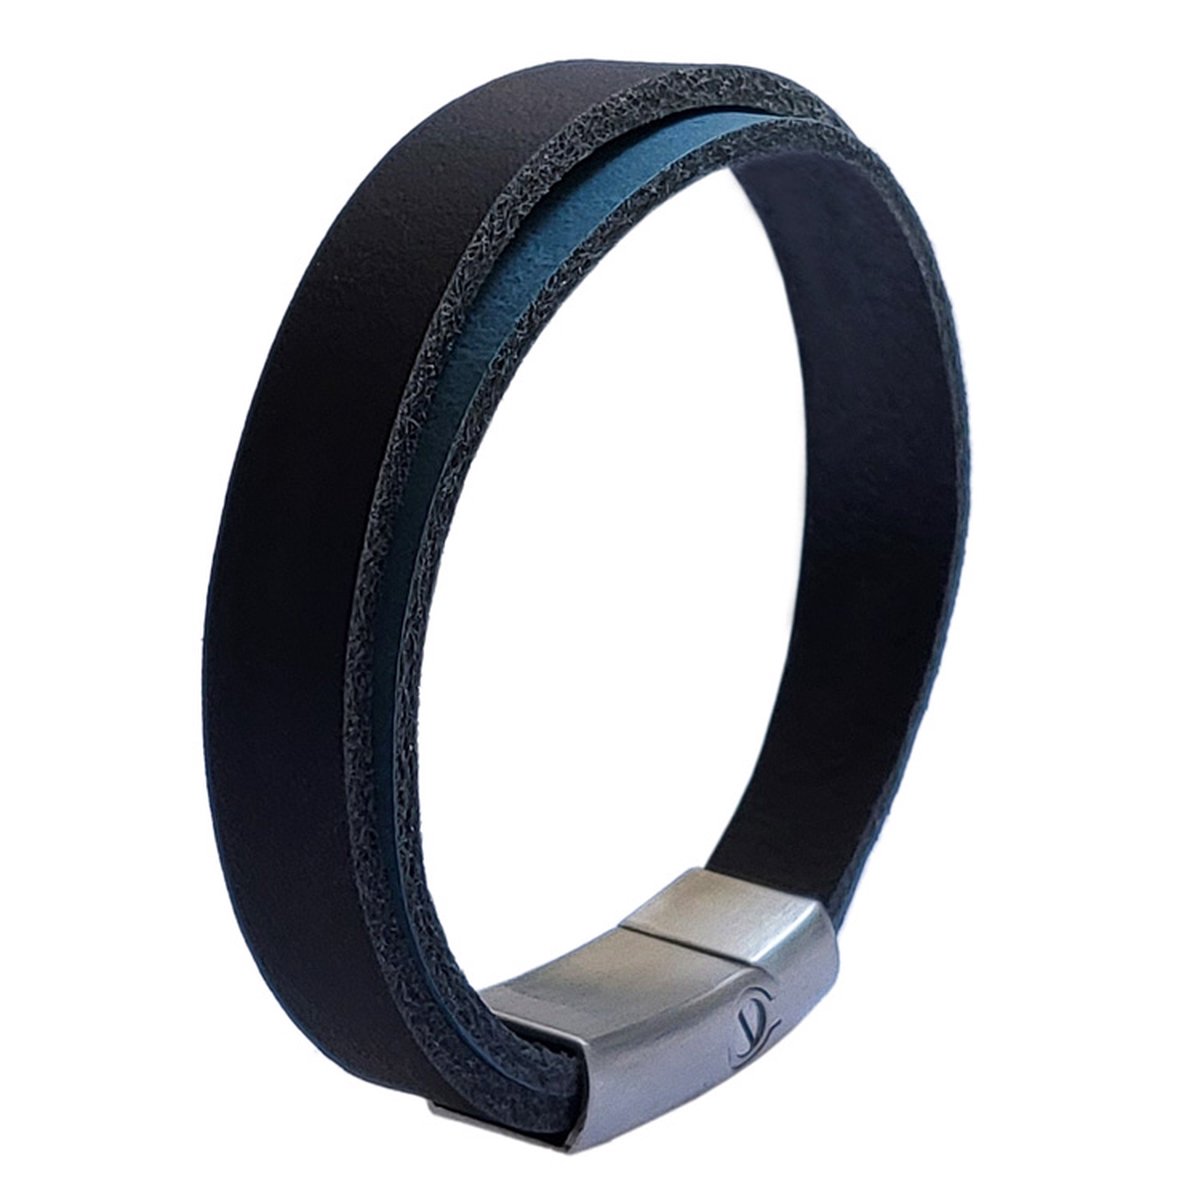 As armband Double schuifsluiting zwart-blauw 18 cm